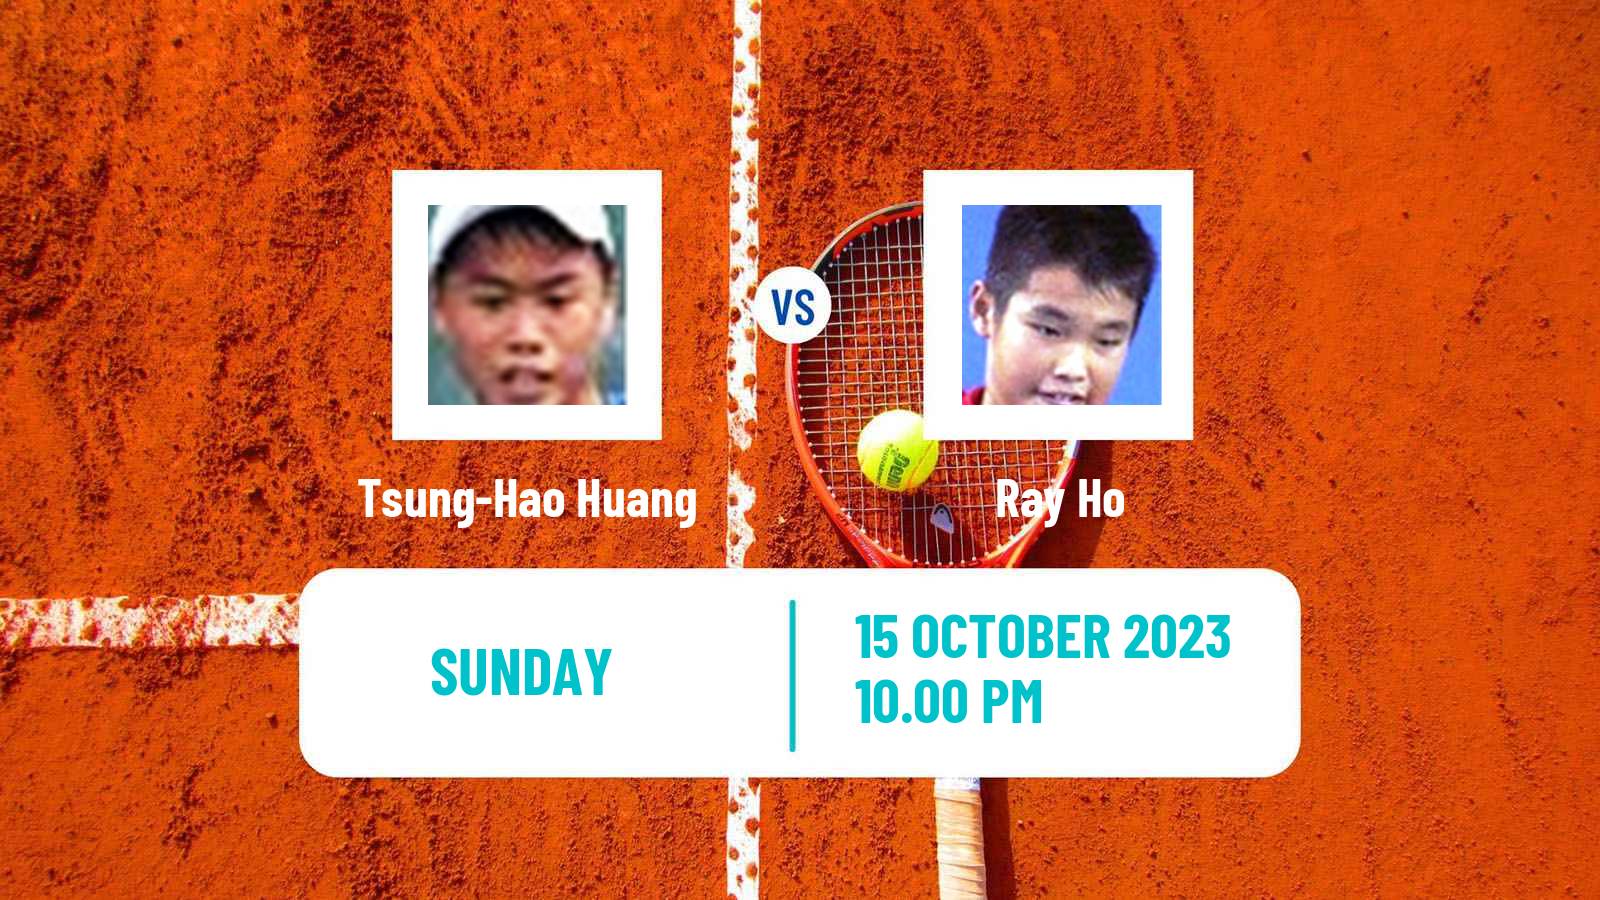 Tennis Shenzhen 3 Challenger Men Tsung-Hao Huang - Ray Ho